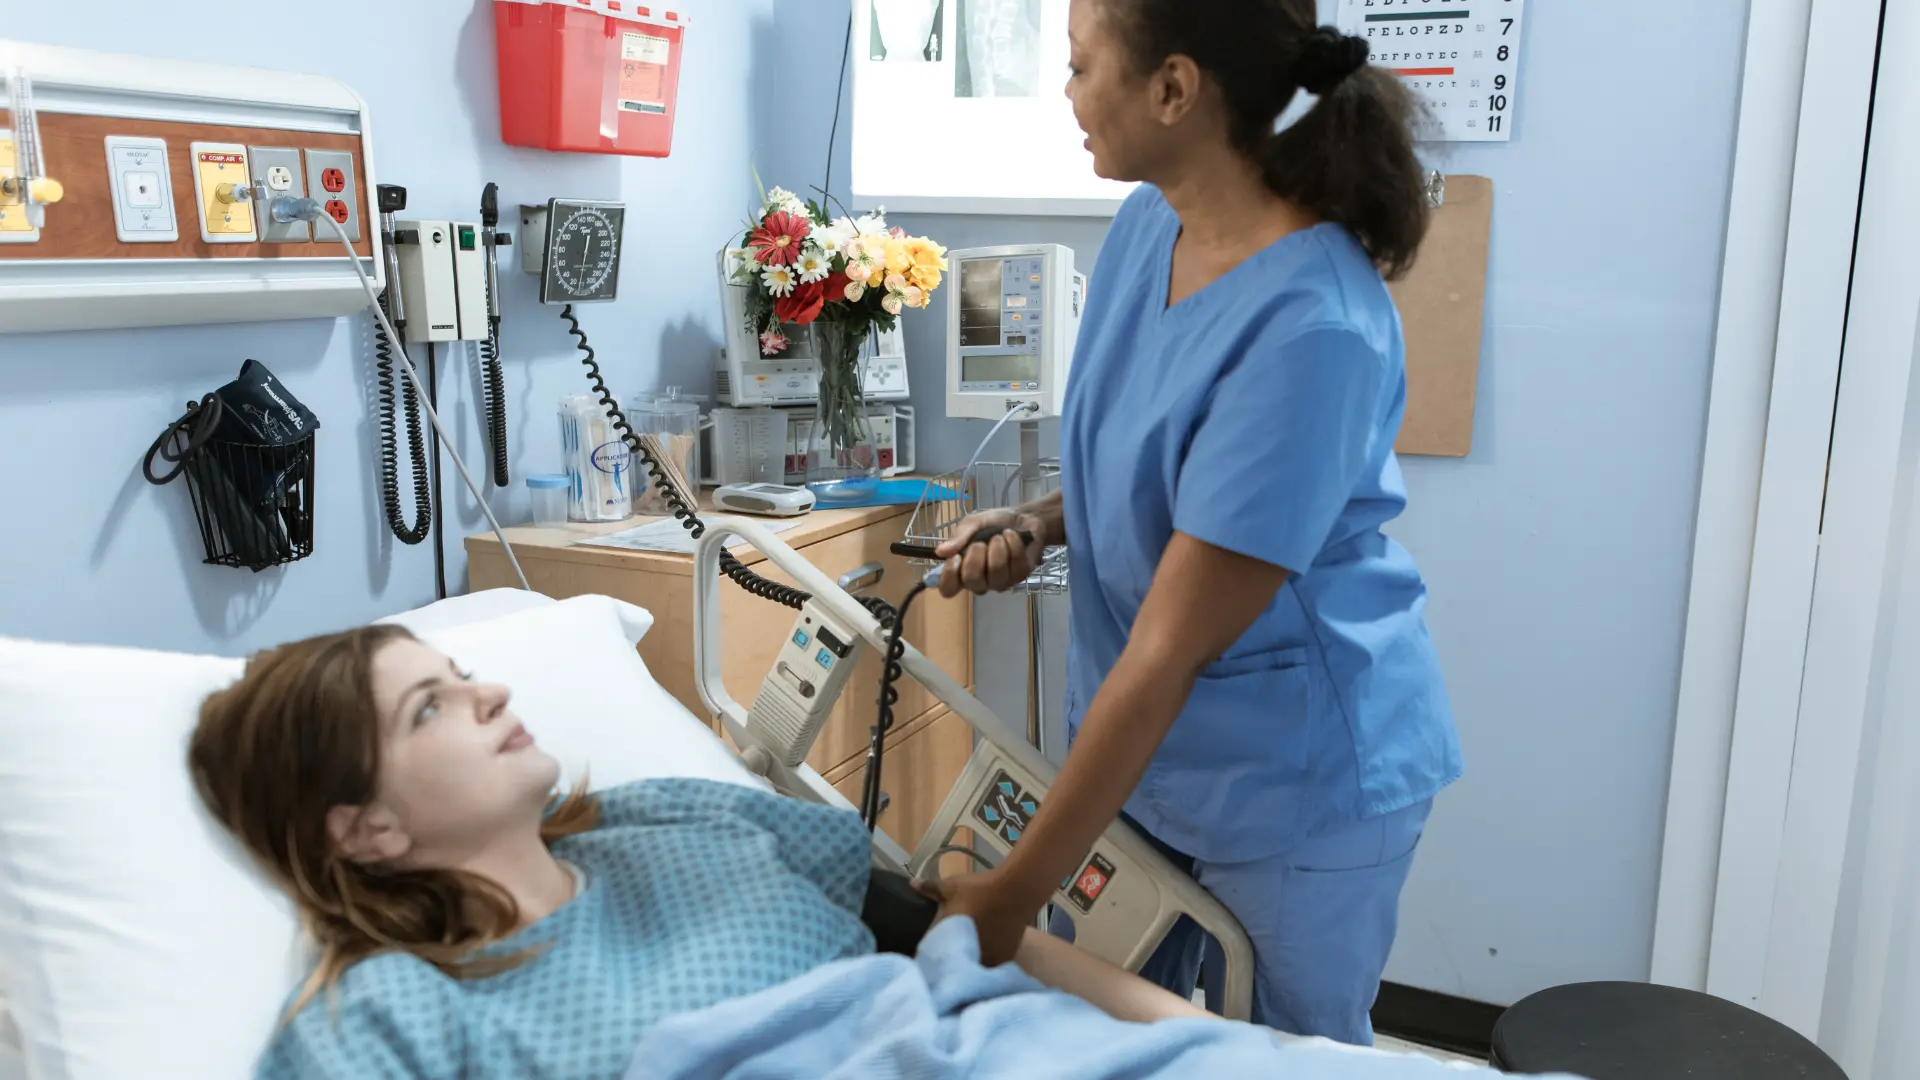 Une infirmière s'occupant d'une patiente à l'hôpital. Image servant à illustrer les indemnités journalières.